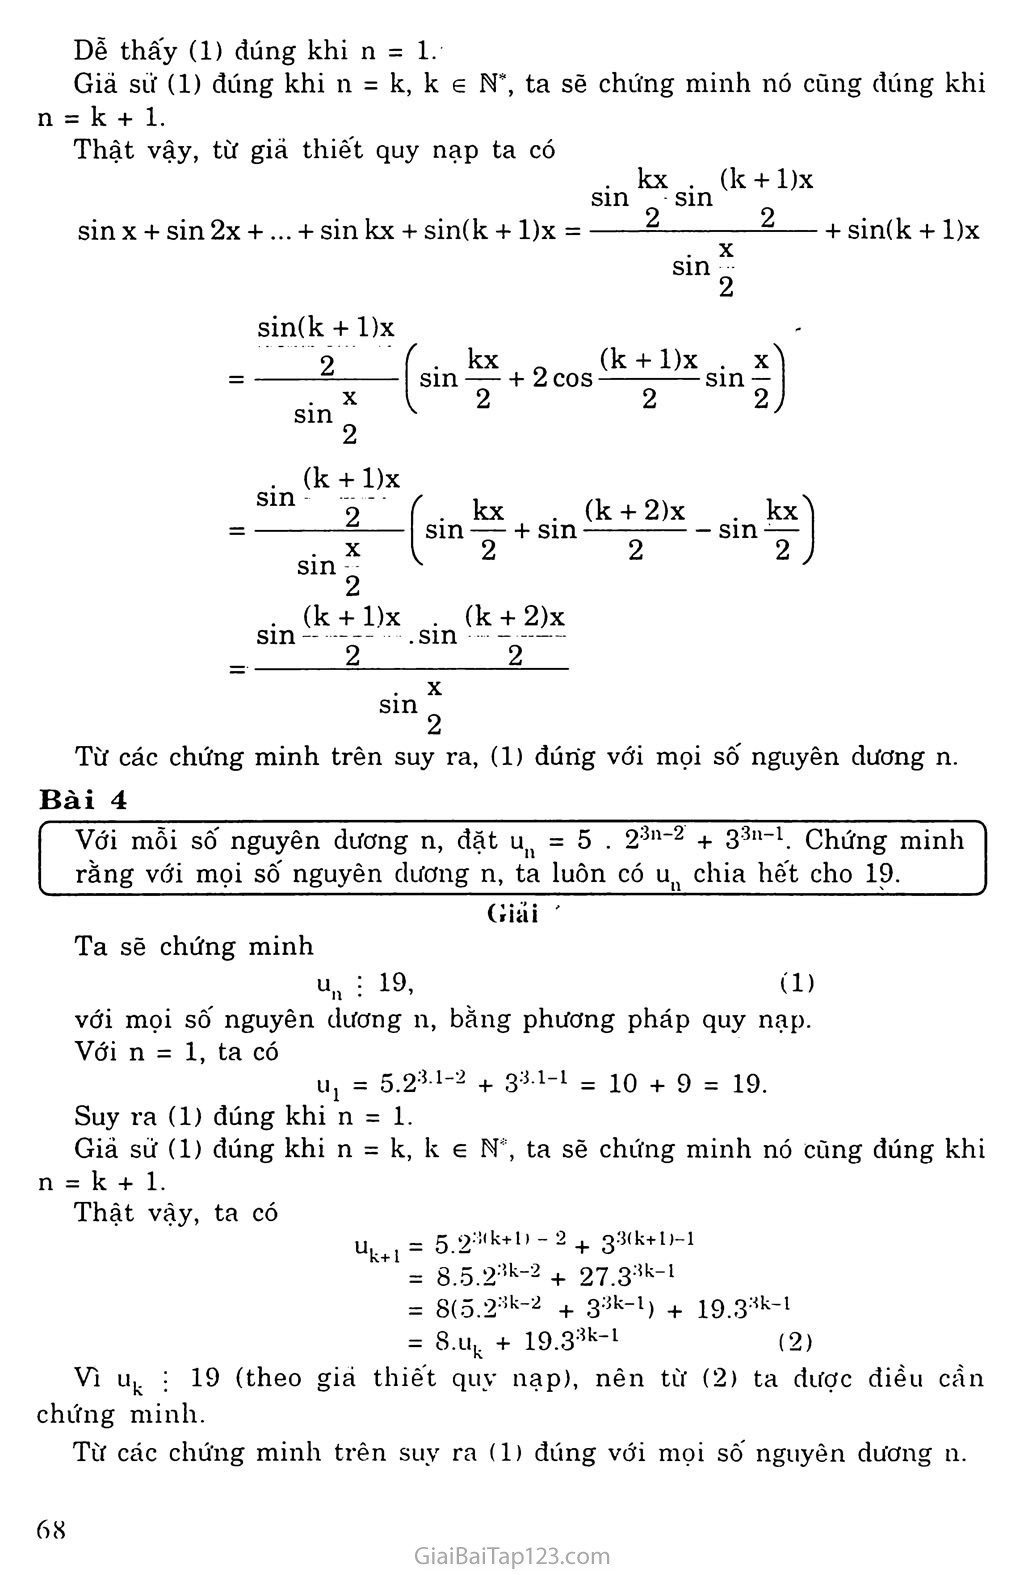 Vấn đề 1. Phương pháp qui nạp toán học trang 8